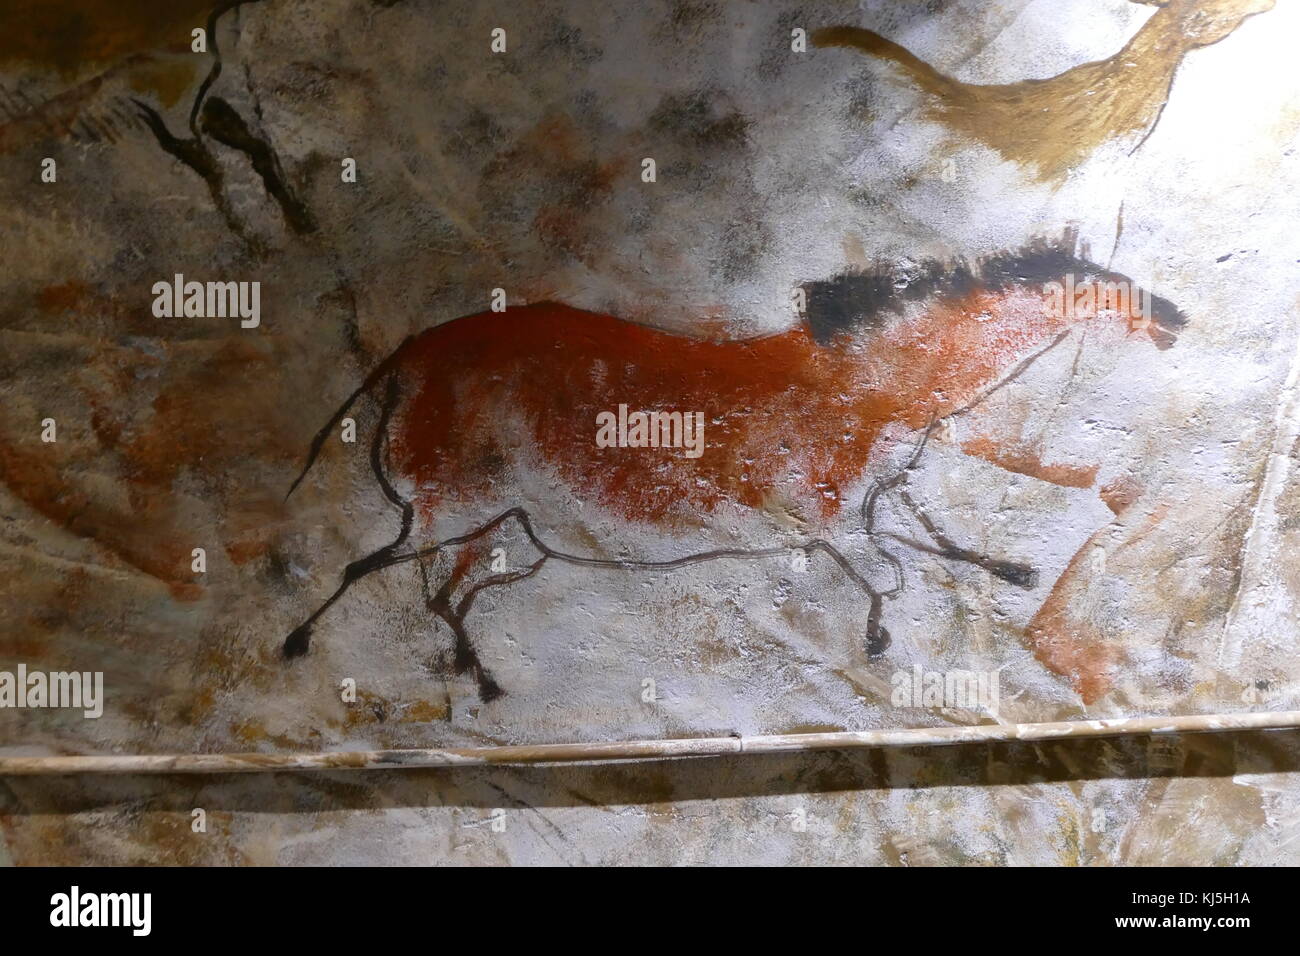 Replica Malerei aus der Höhle von Altamira (Cueva de Altamir) in der Nähe der historischen Stadt Santillana del Mar in Kantabrien, Spanien gelegen, ist für seine zahlreichen parietalen Höhlenmalereien mit kohlezeichnungen und polychrome Gemälde zeitgenössischer Flora und menschliche Hände, zwischen 18.500 und 14.000 Jahren während der jungpaläolithikum Erstellt von Paleo menschlichen Siedler bekannt. Die frühesten Bilder in der Höhle wurden rund 35.600 Jahren ausgeführt. Stockfoto